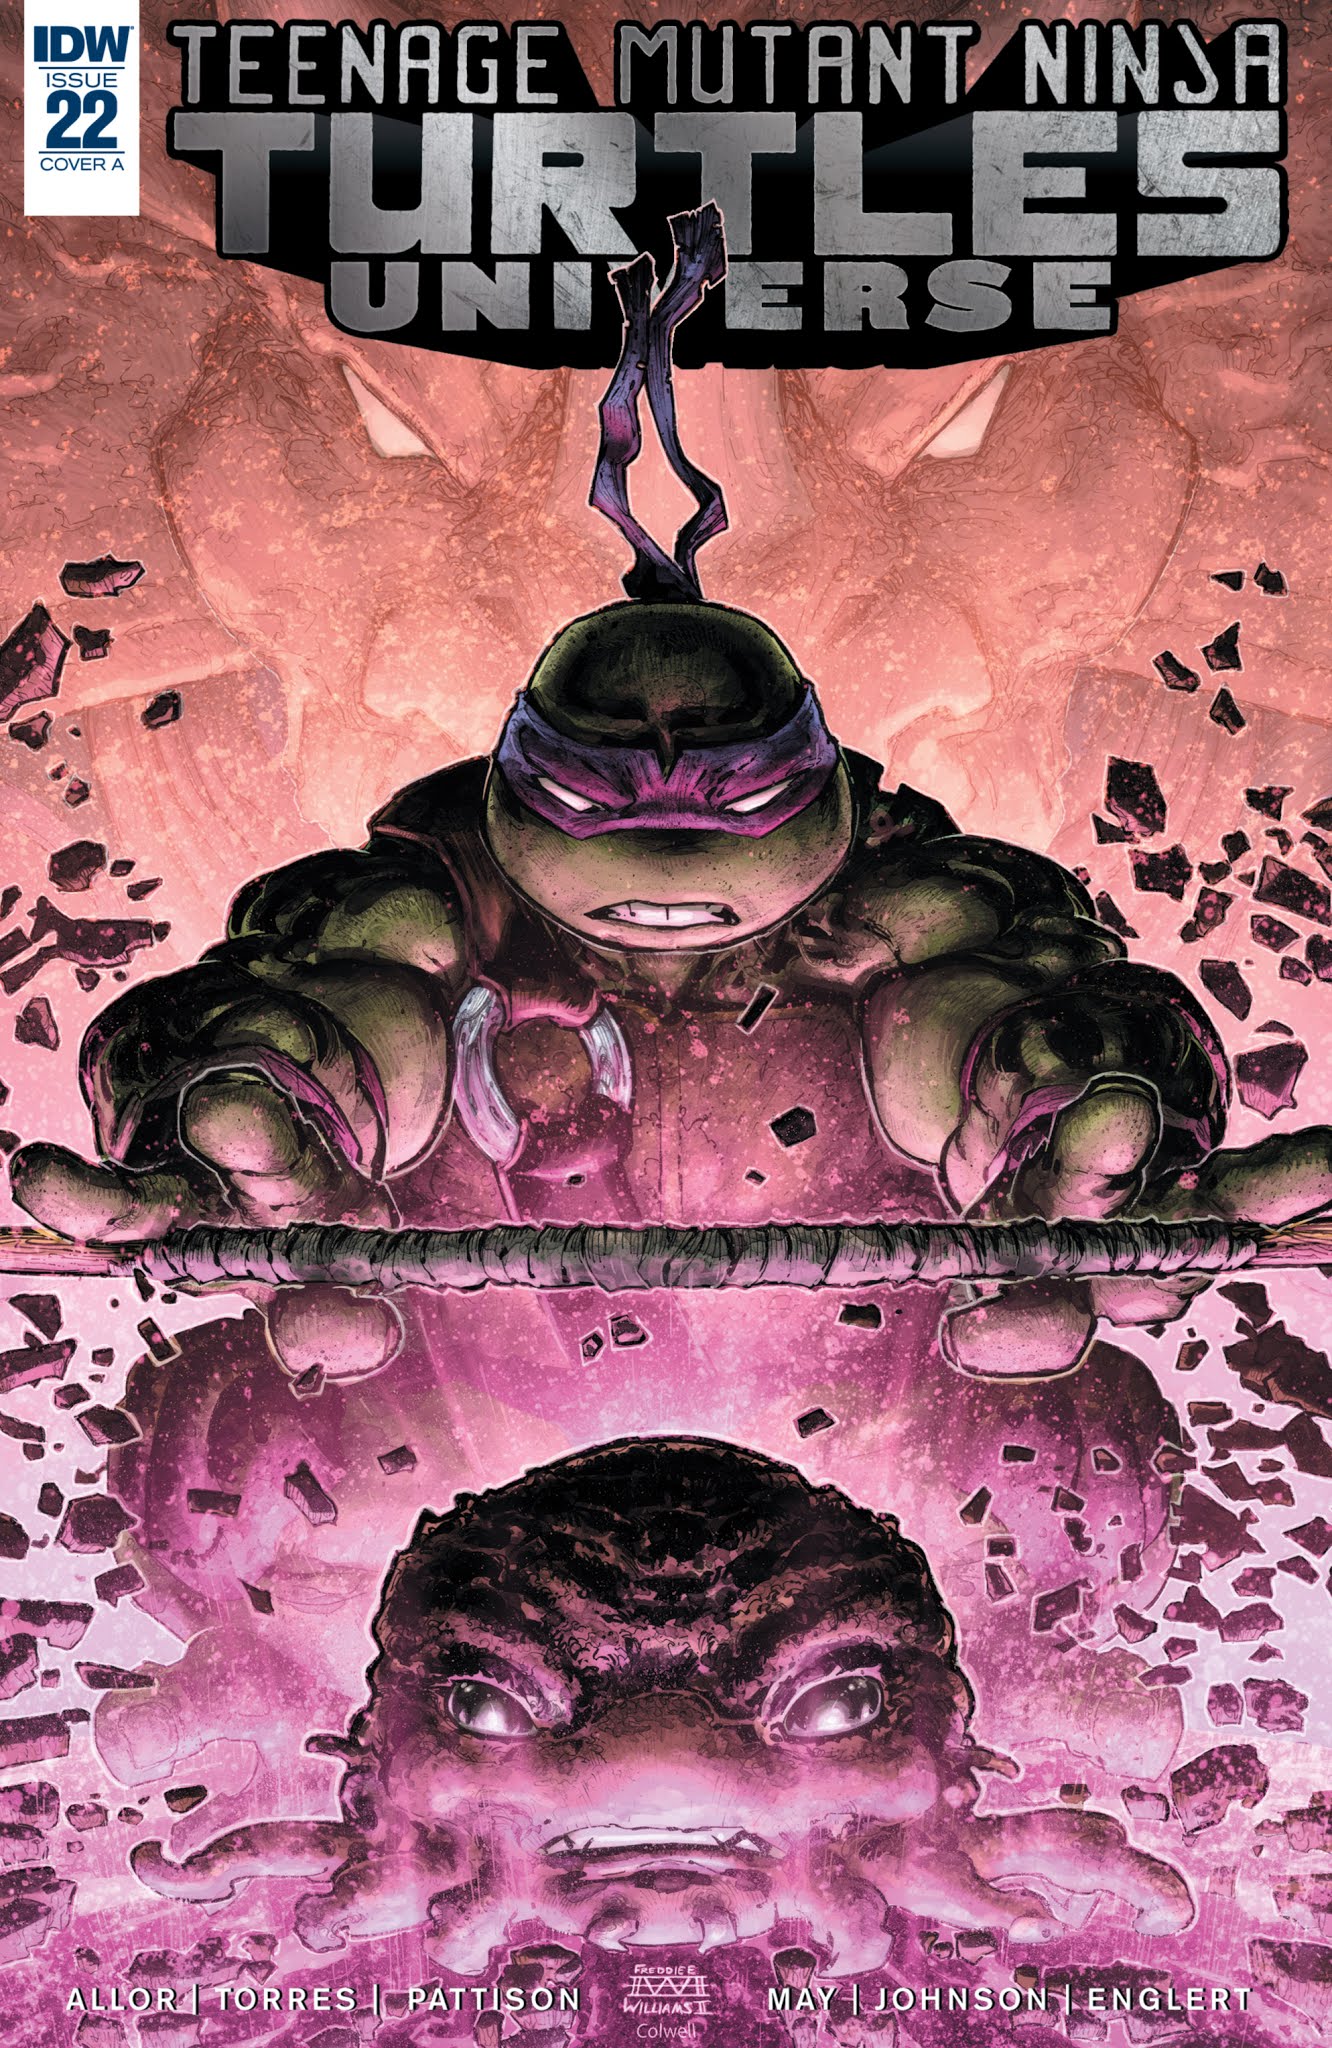 Read online Teenage Mutant Ninja Turtles Universe comic -  Issue #22 - 1